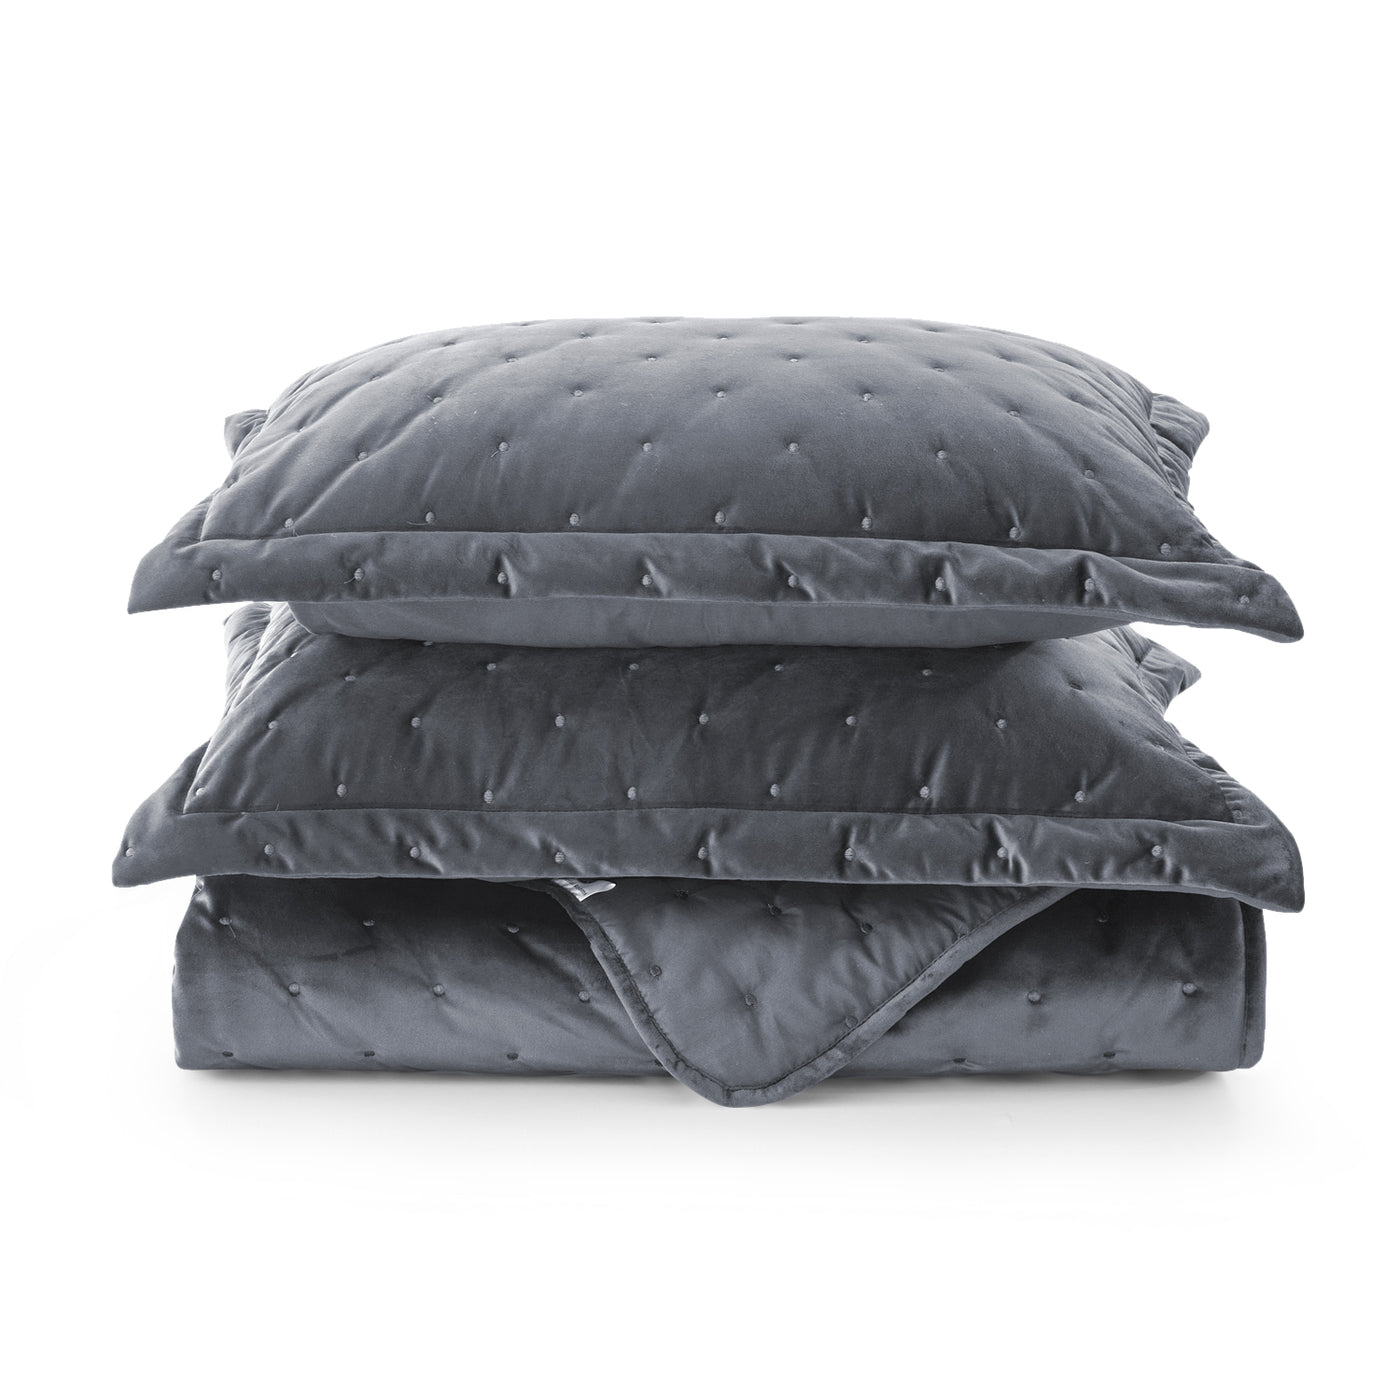 Crushed Velvet Bedspread Grey Bedding Set